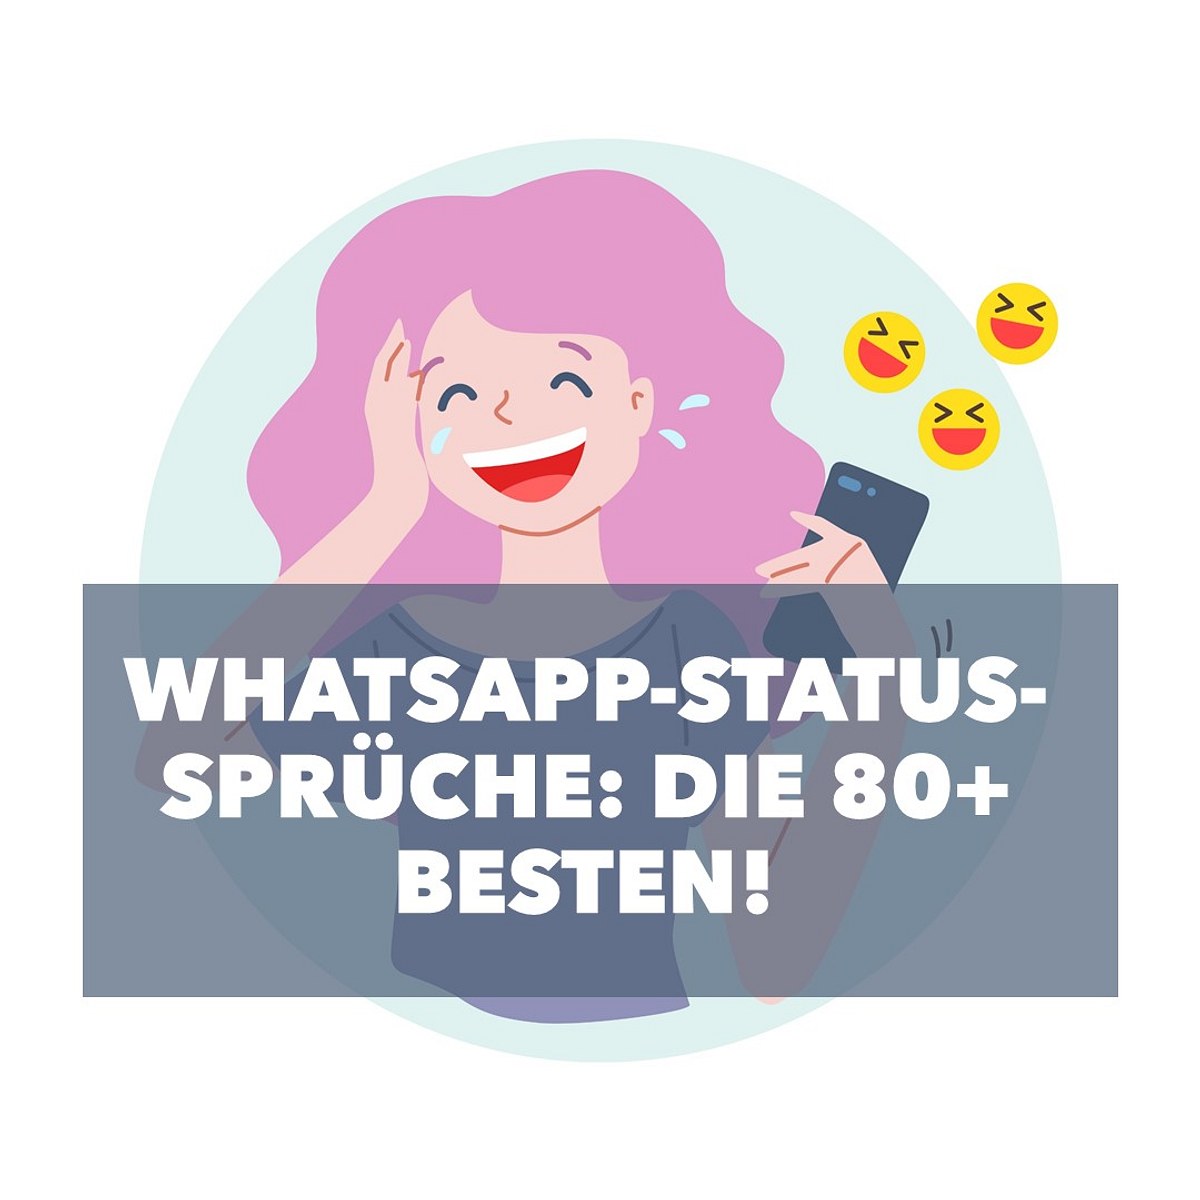 Die besten WhatsApp-Status-Sprüche